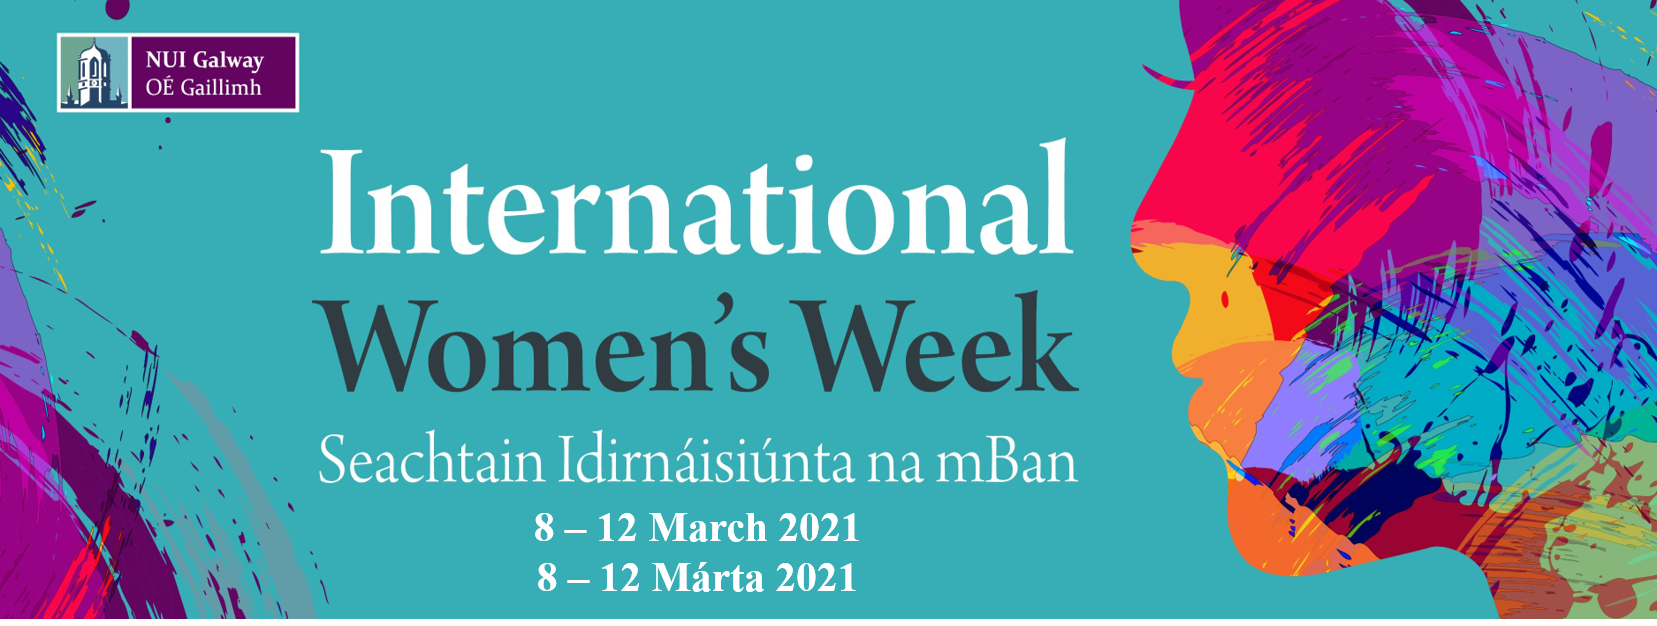 International Women's Week 2021 banner